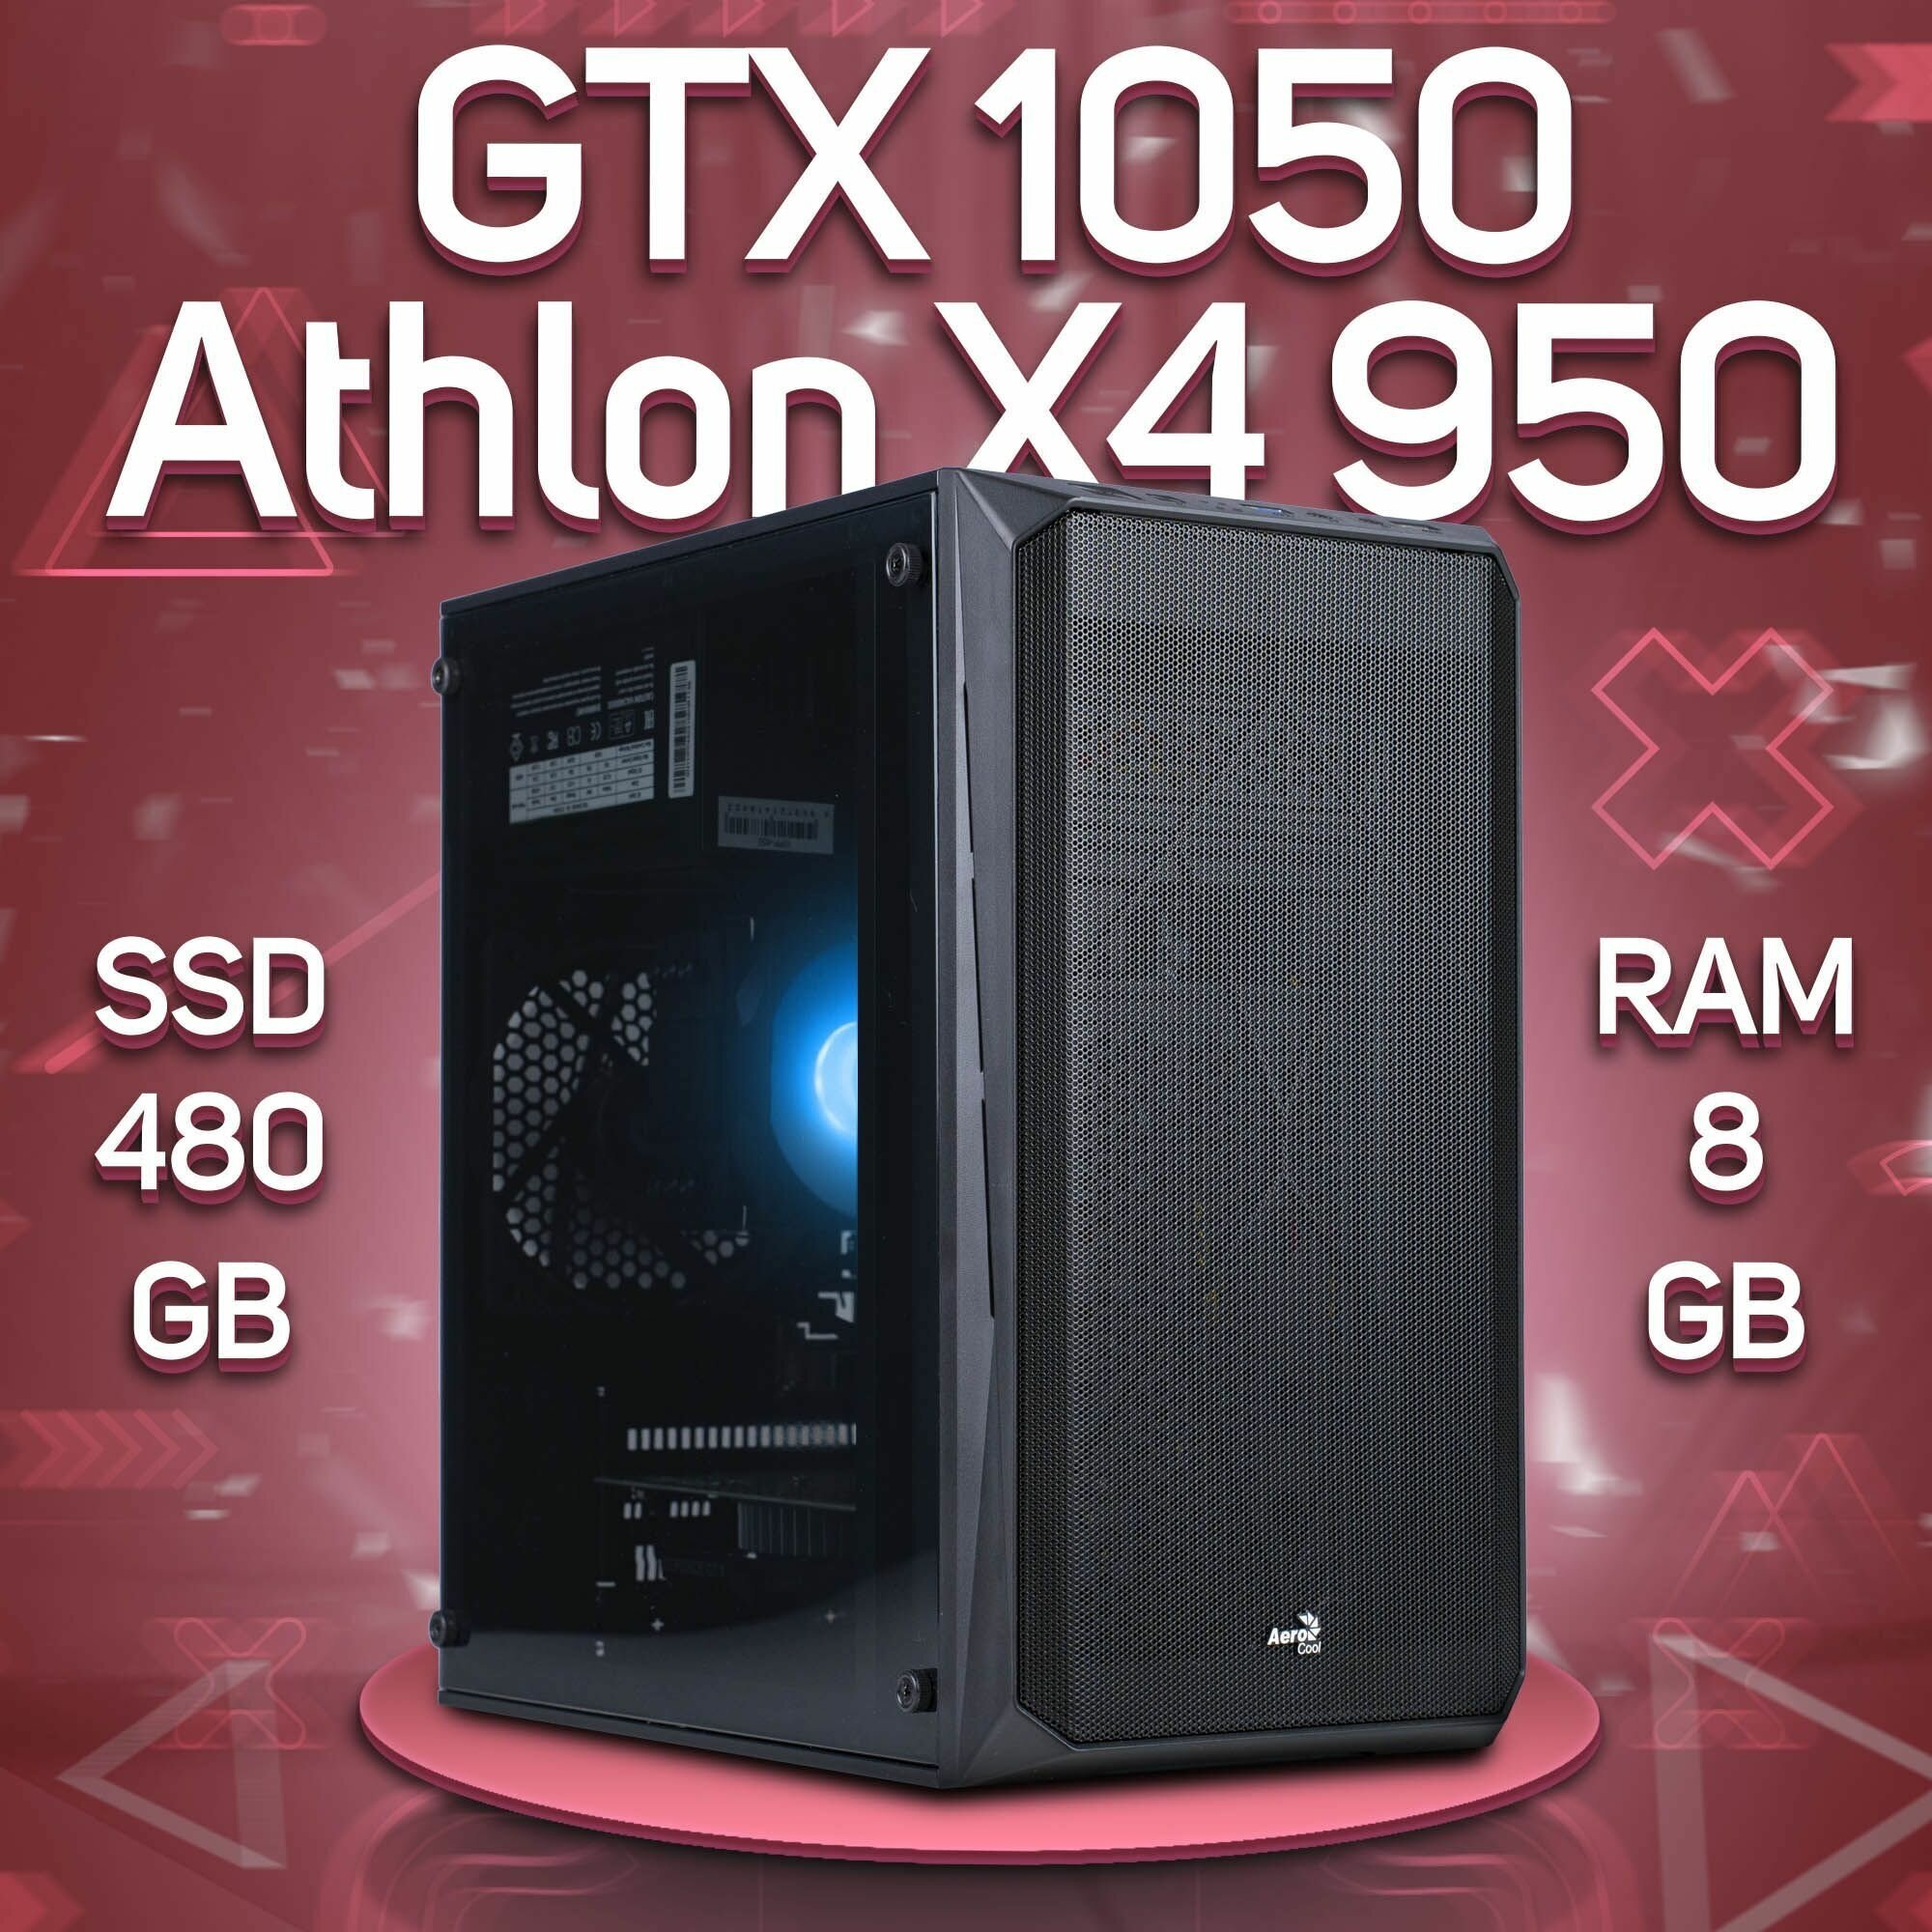 Компьютер AMD Athlon X4 950, NVIDIA GeForce GTX 1050 (2 Гб), DDR4 8gb, SSD 480gb